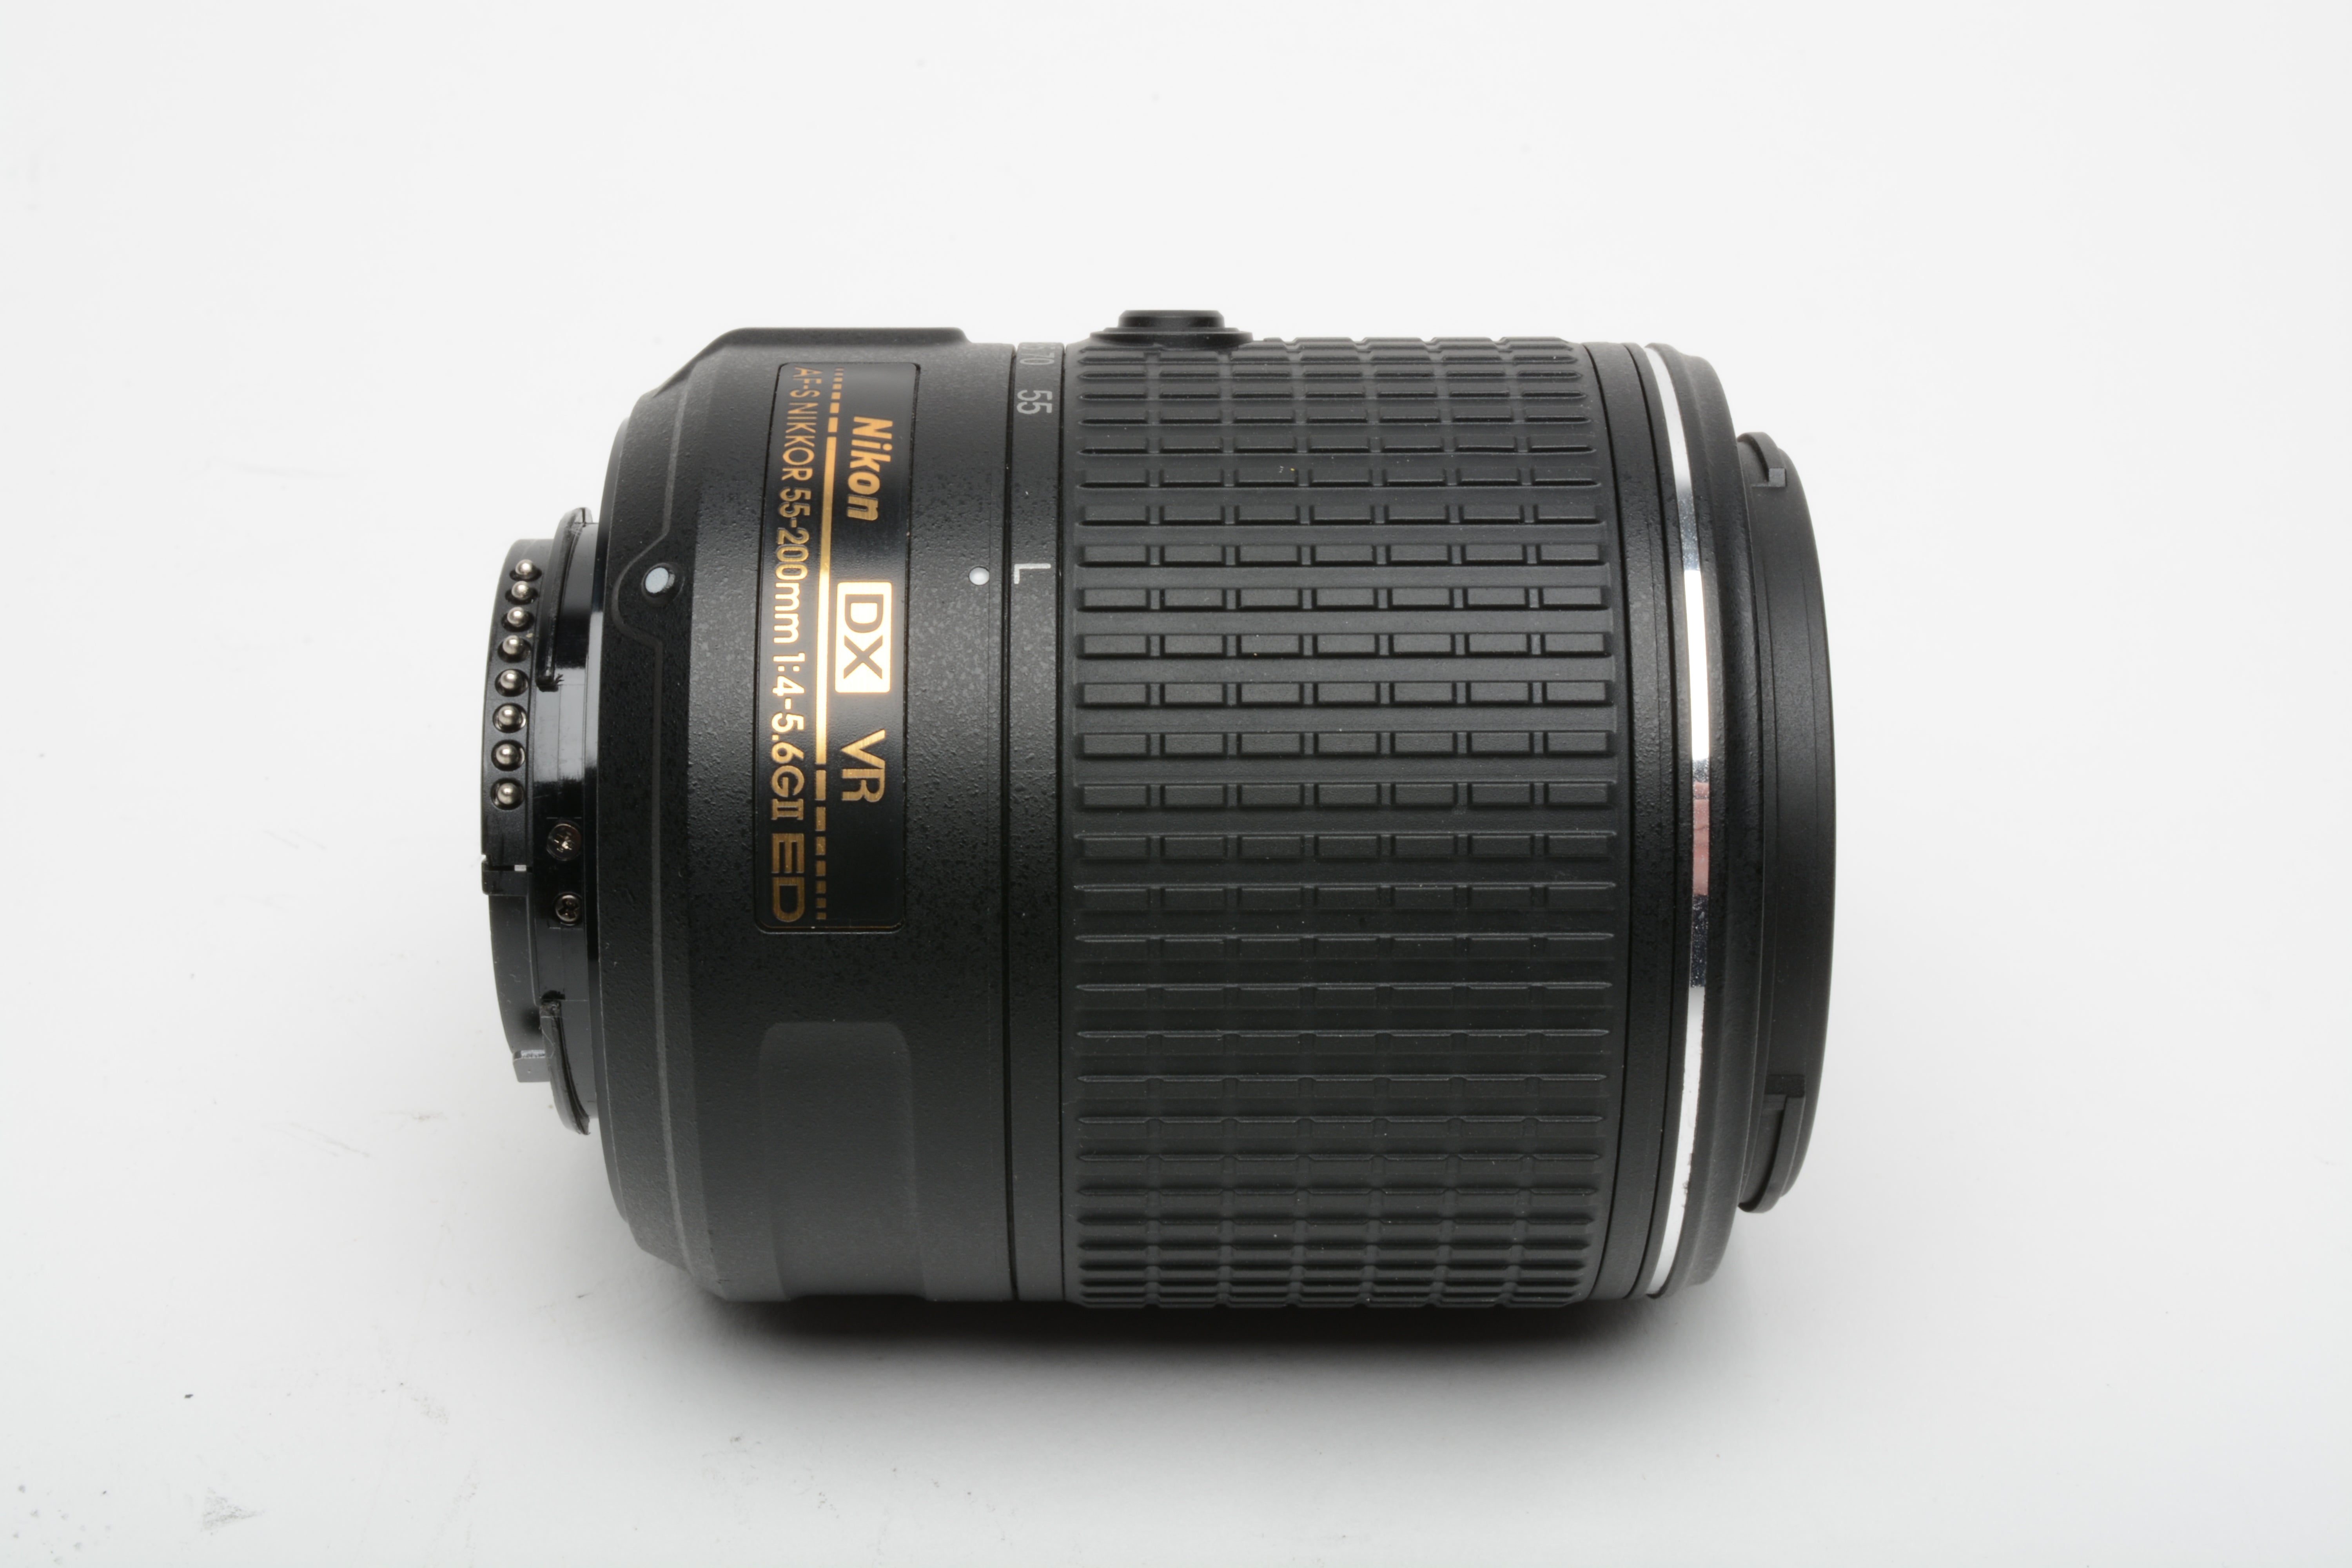 Nikon AFS Nikkor 55-200mm F4-5.6G II ED DX VR compact zoom lens